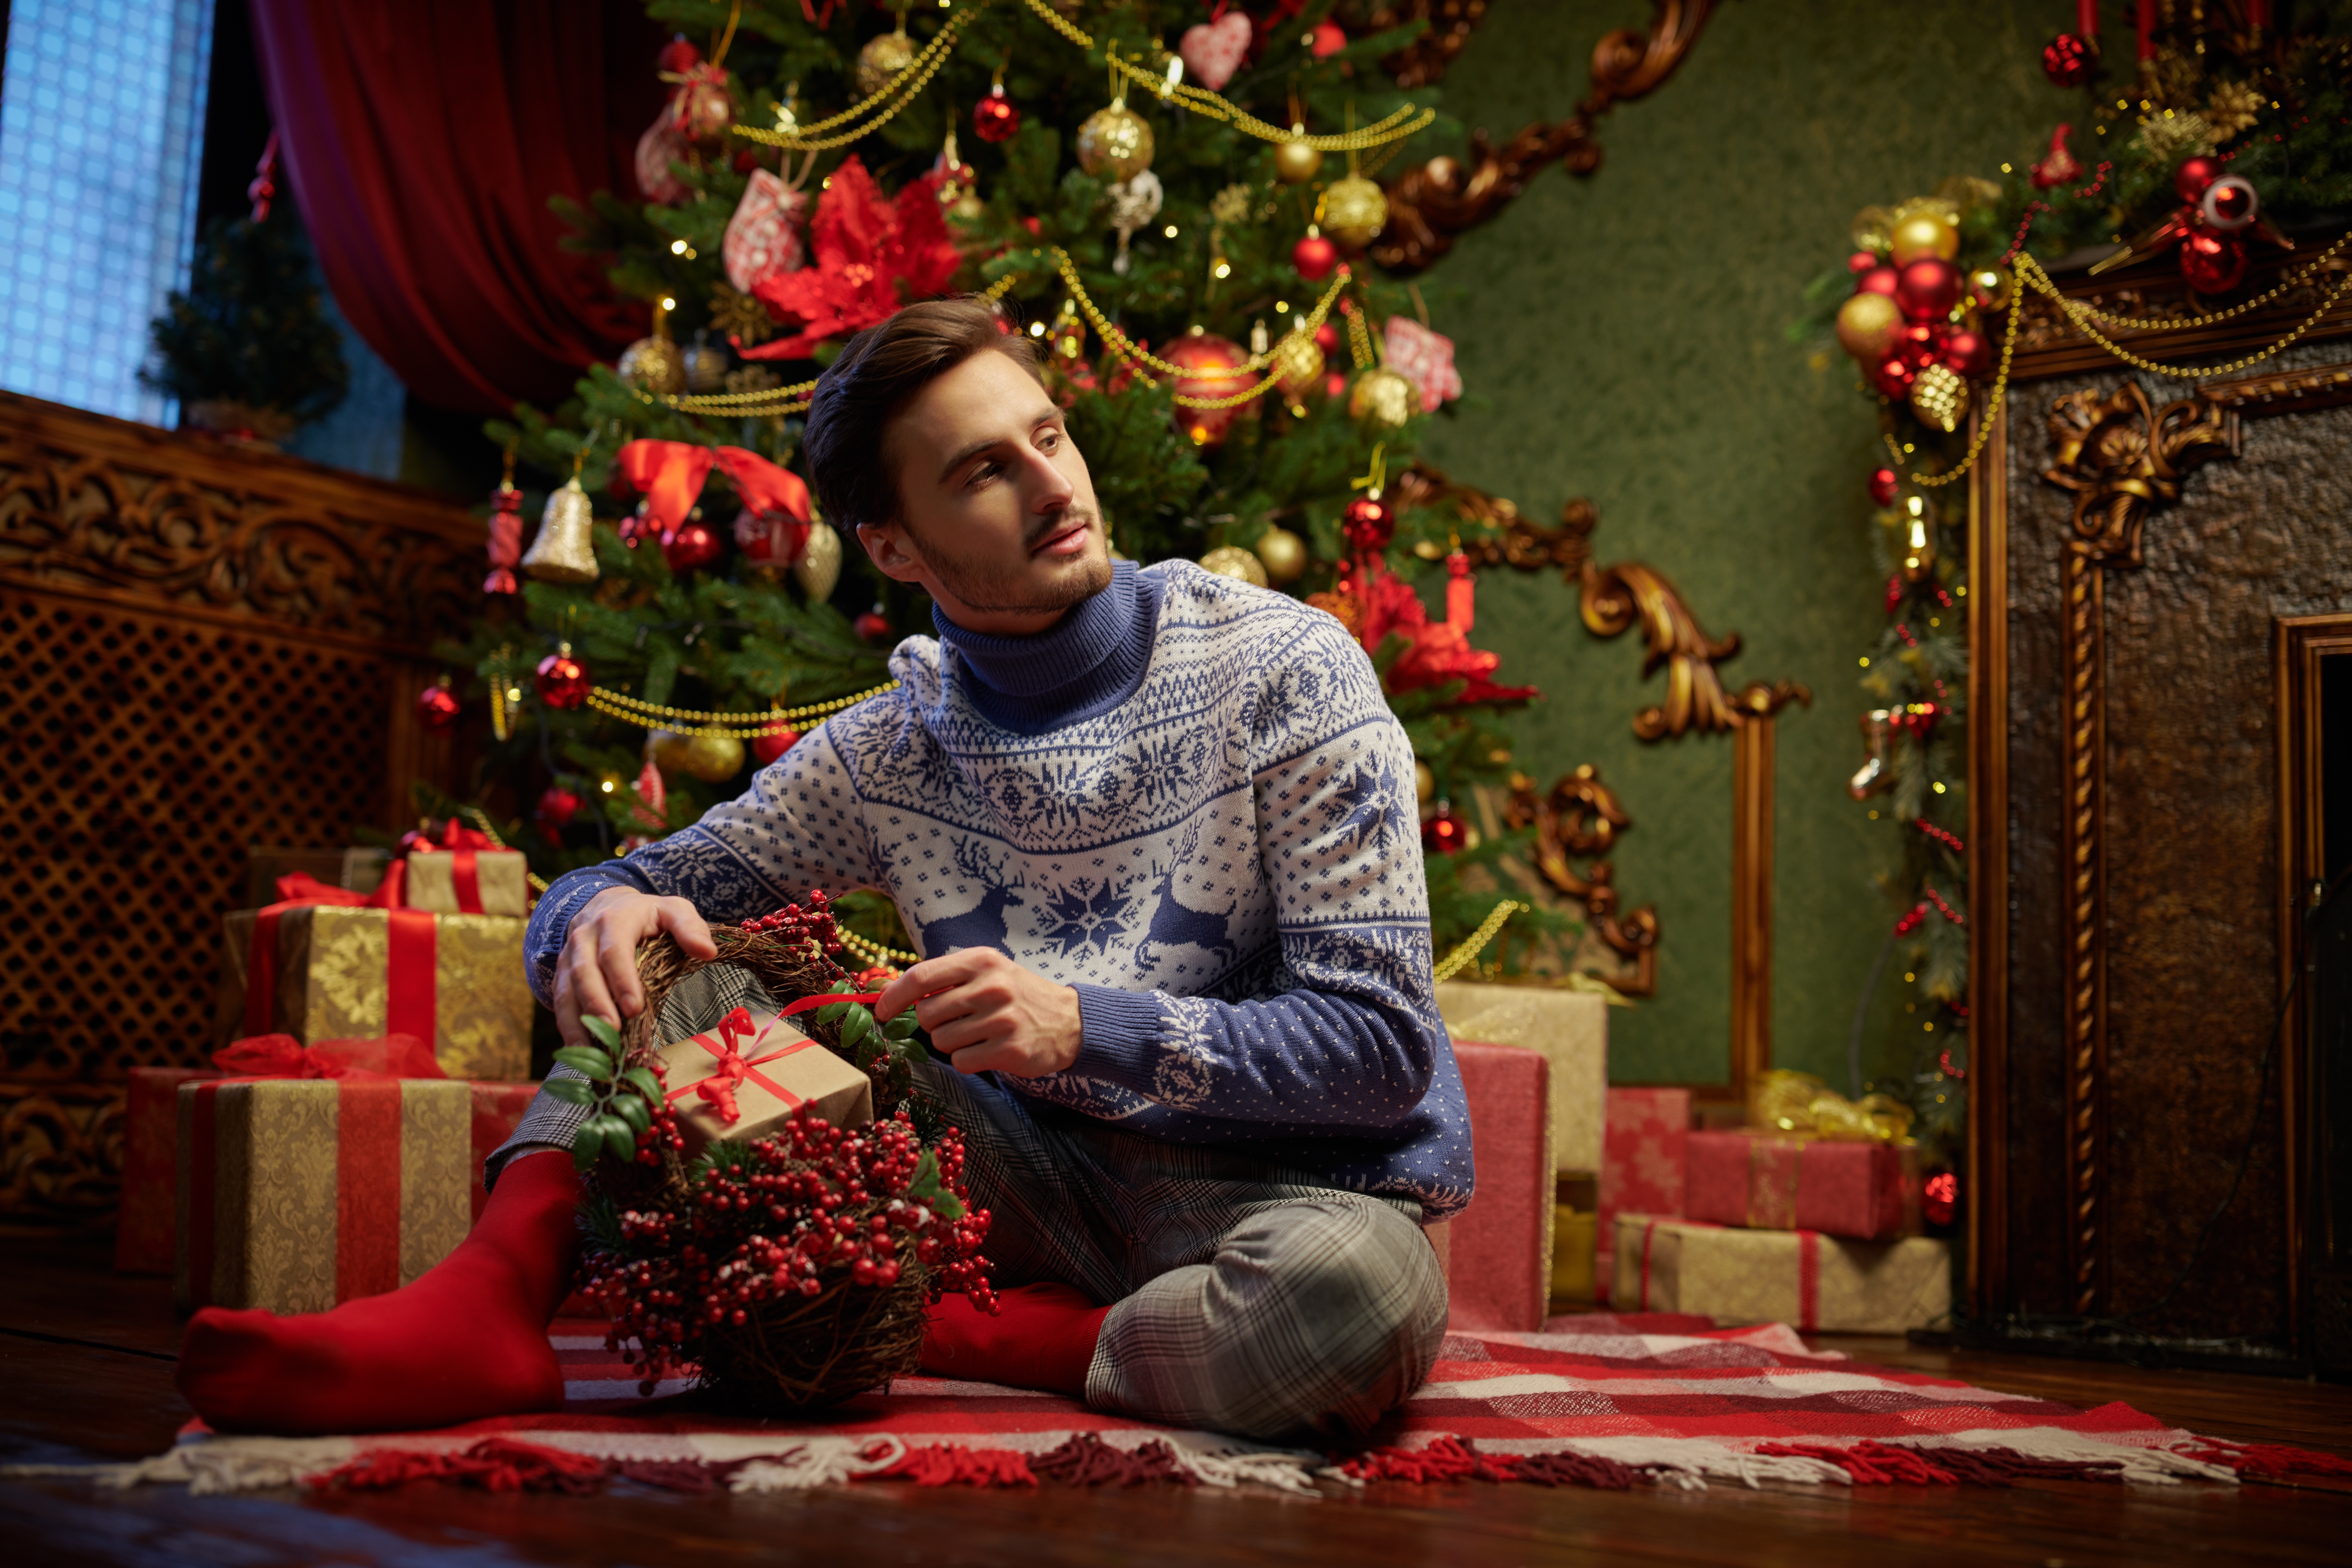 Ein Junge öffnet ein Weihnachtsgeschenk | Quelle: Shuttertsock